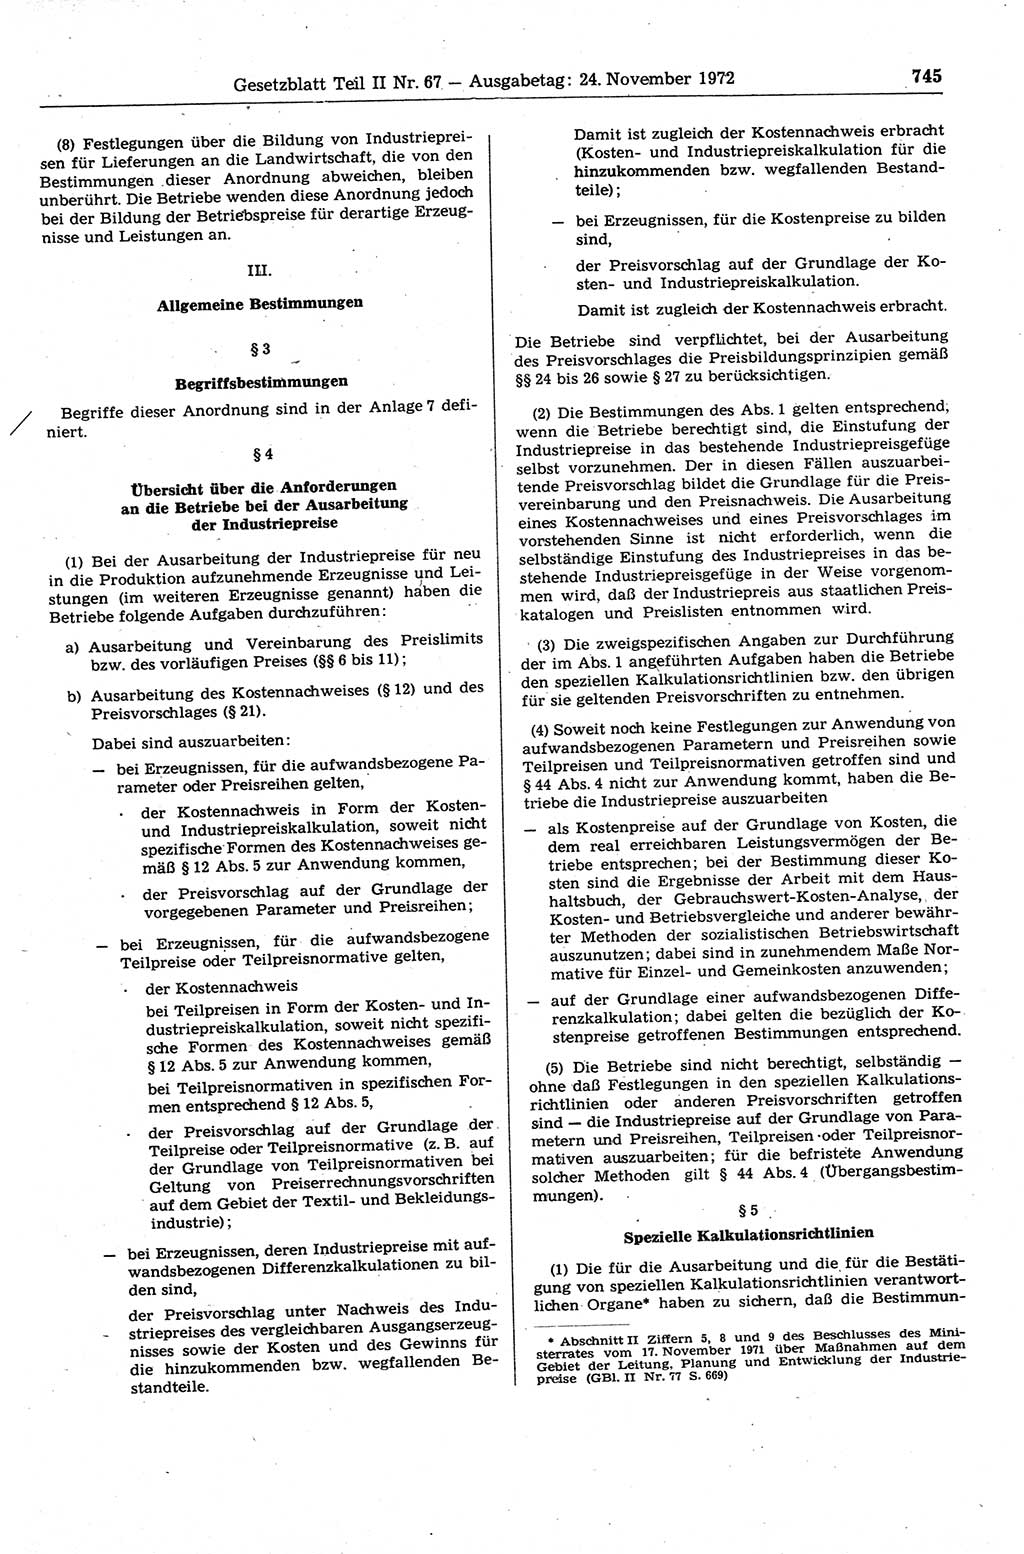 Gesetzblatt (GBl.) der Deutschen Demokratischen Republik (DDR) Teil ⅠⅠ 1972, Seite 745 (GBl. DDR ⅠⅠ 1972, S. 745)